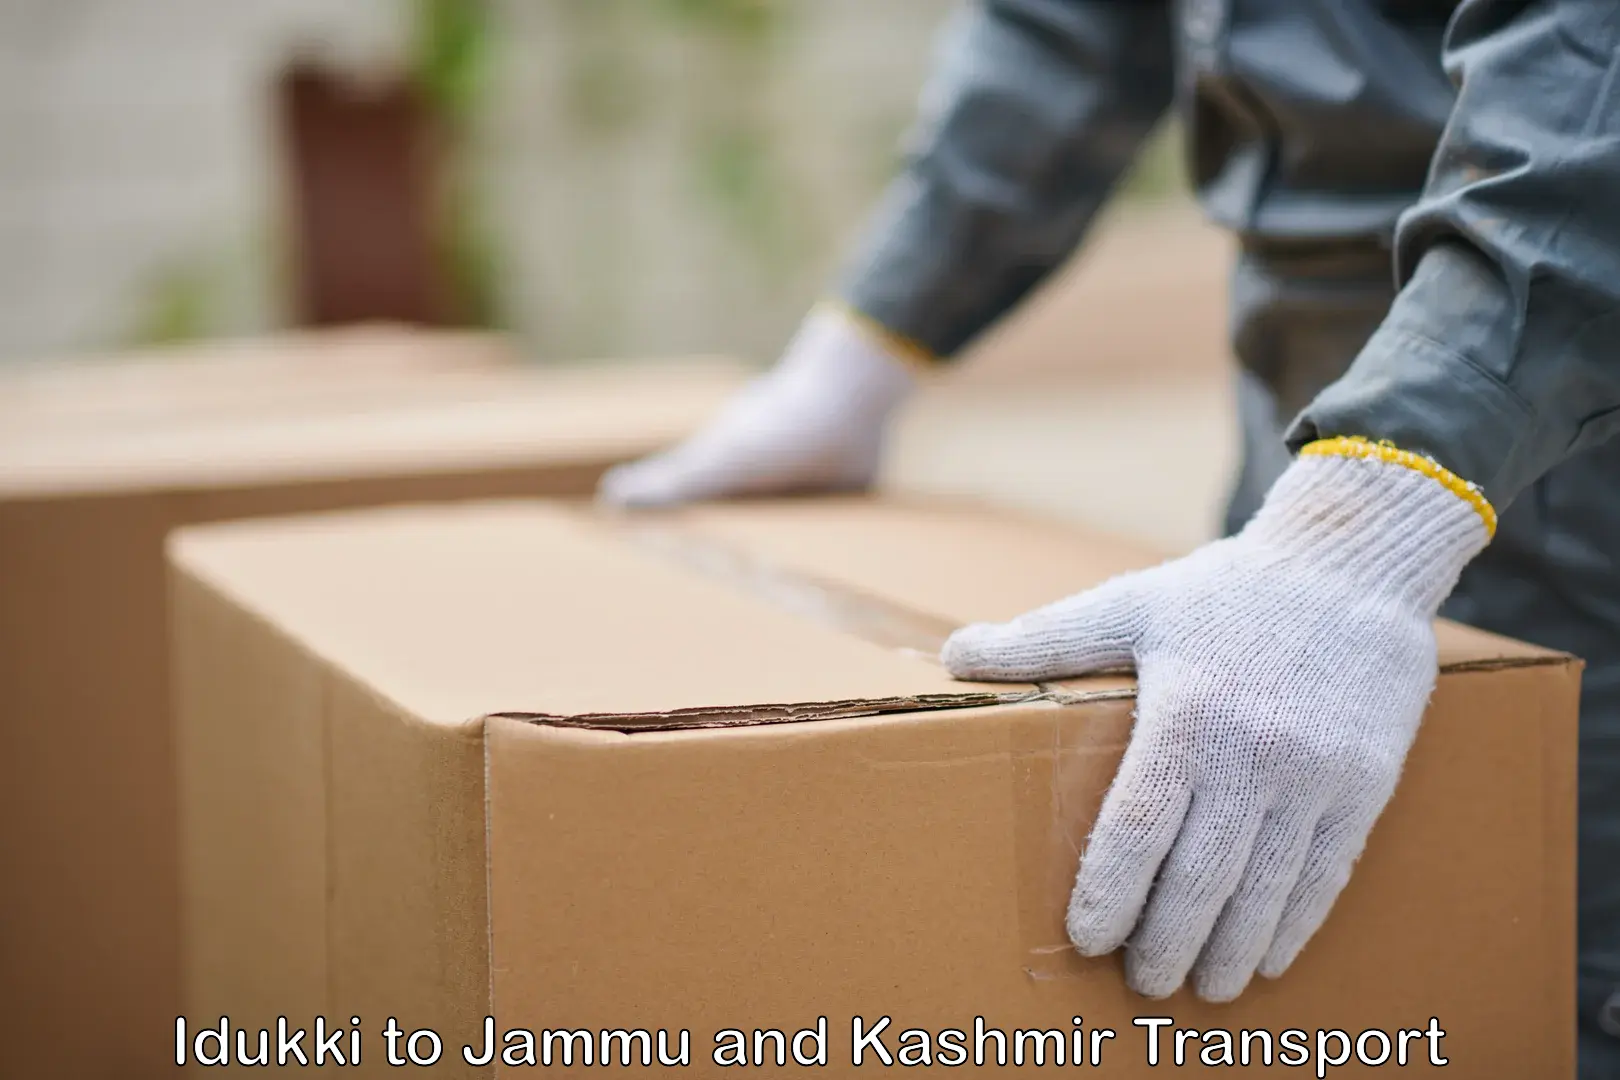 Express transport services Idukki to Jammu and Kashmir